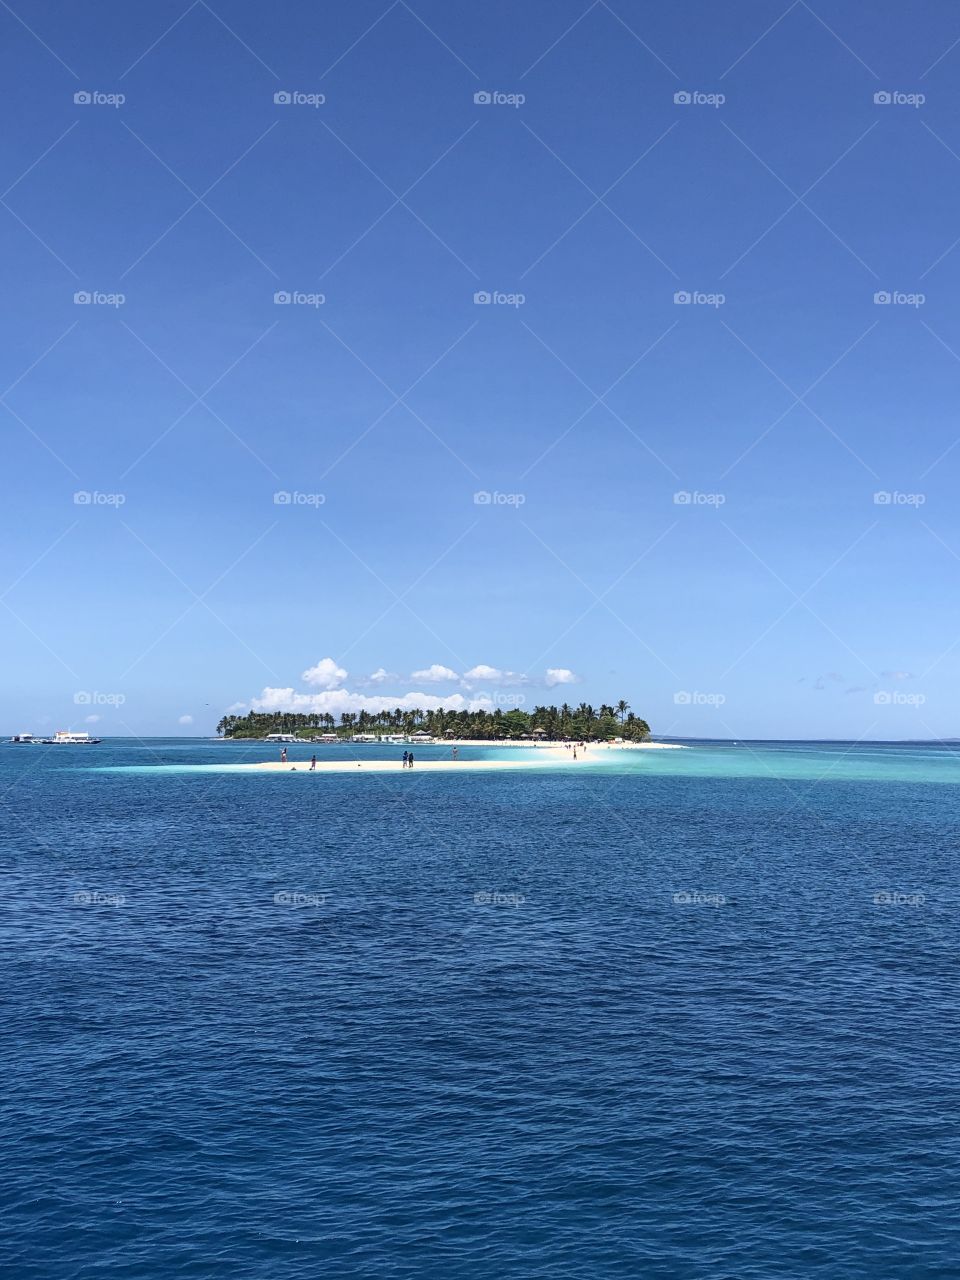 Muito paradise is a island over the blue sea